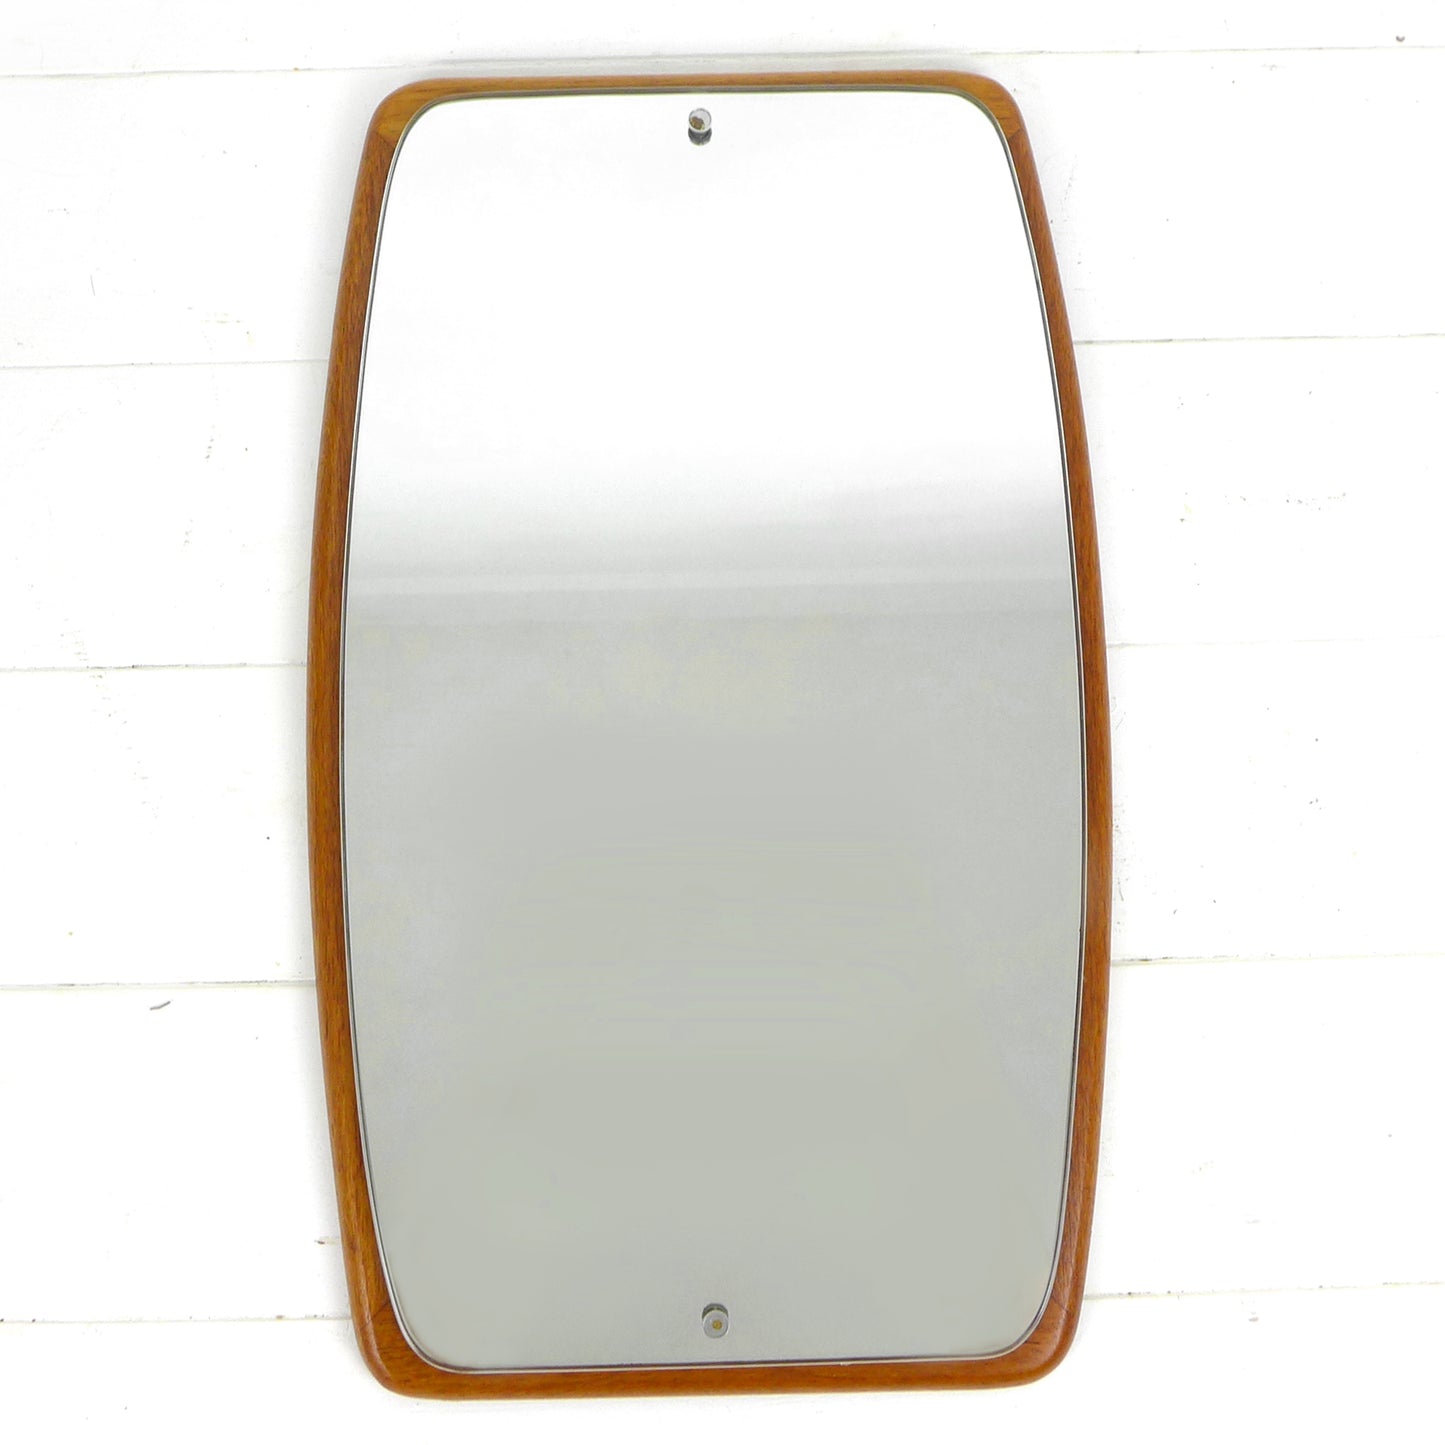 Mid Century Teak Mirror - Vintage 1960's Atomic - Oval/Rectangular